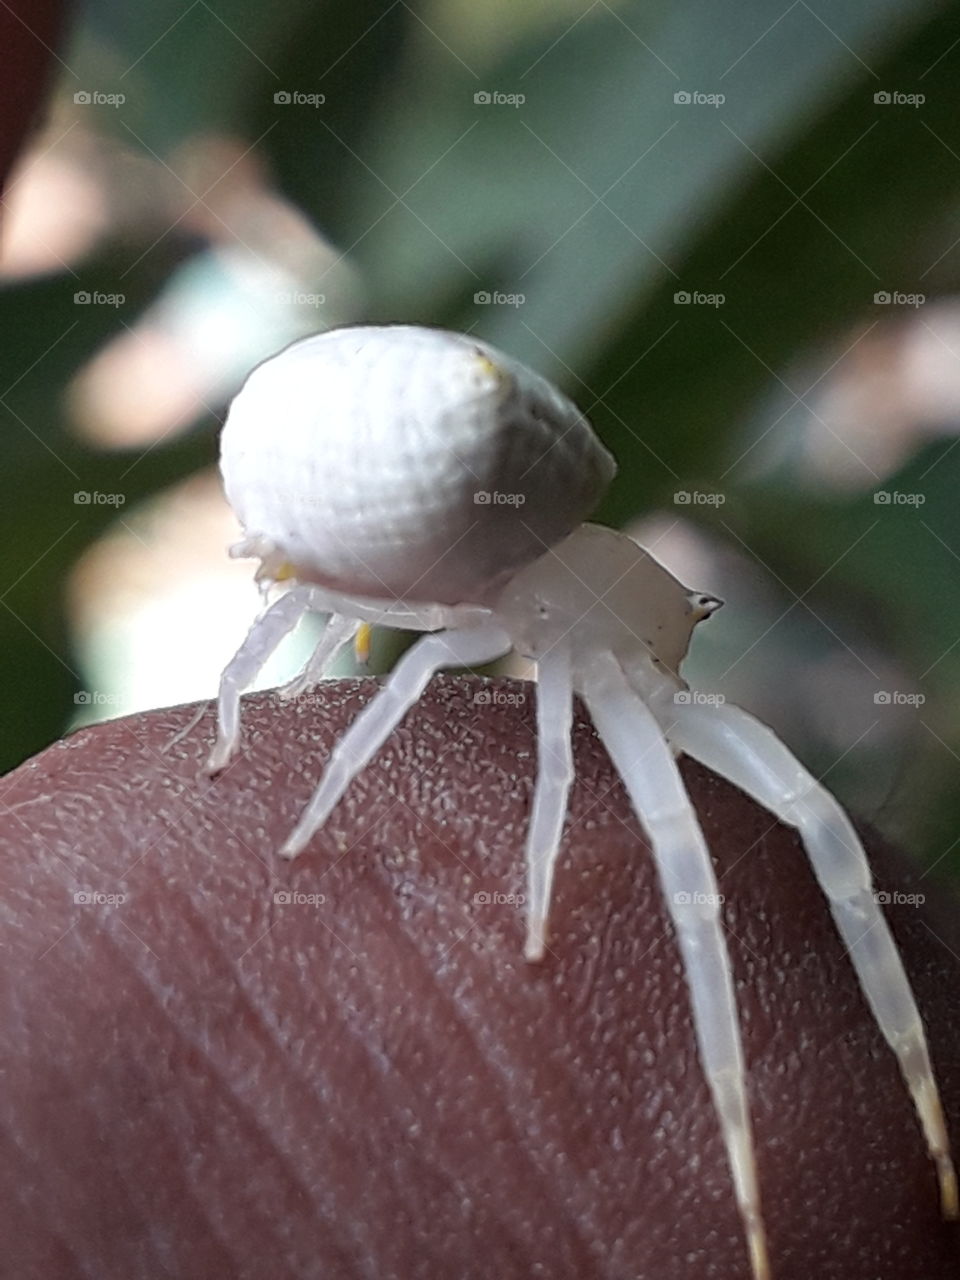 white spider